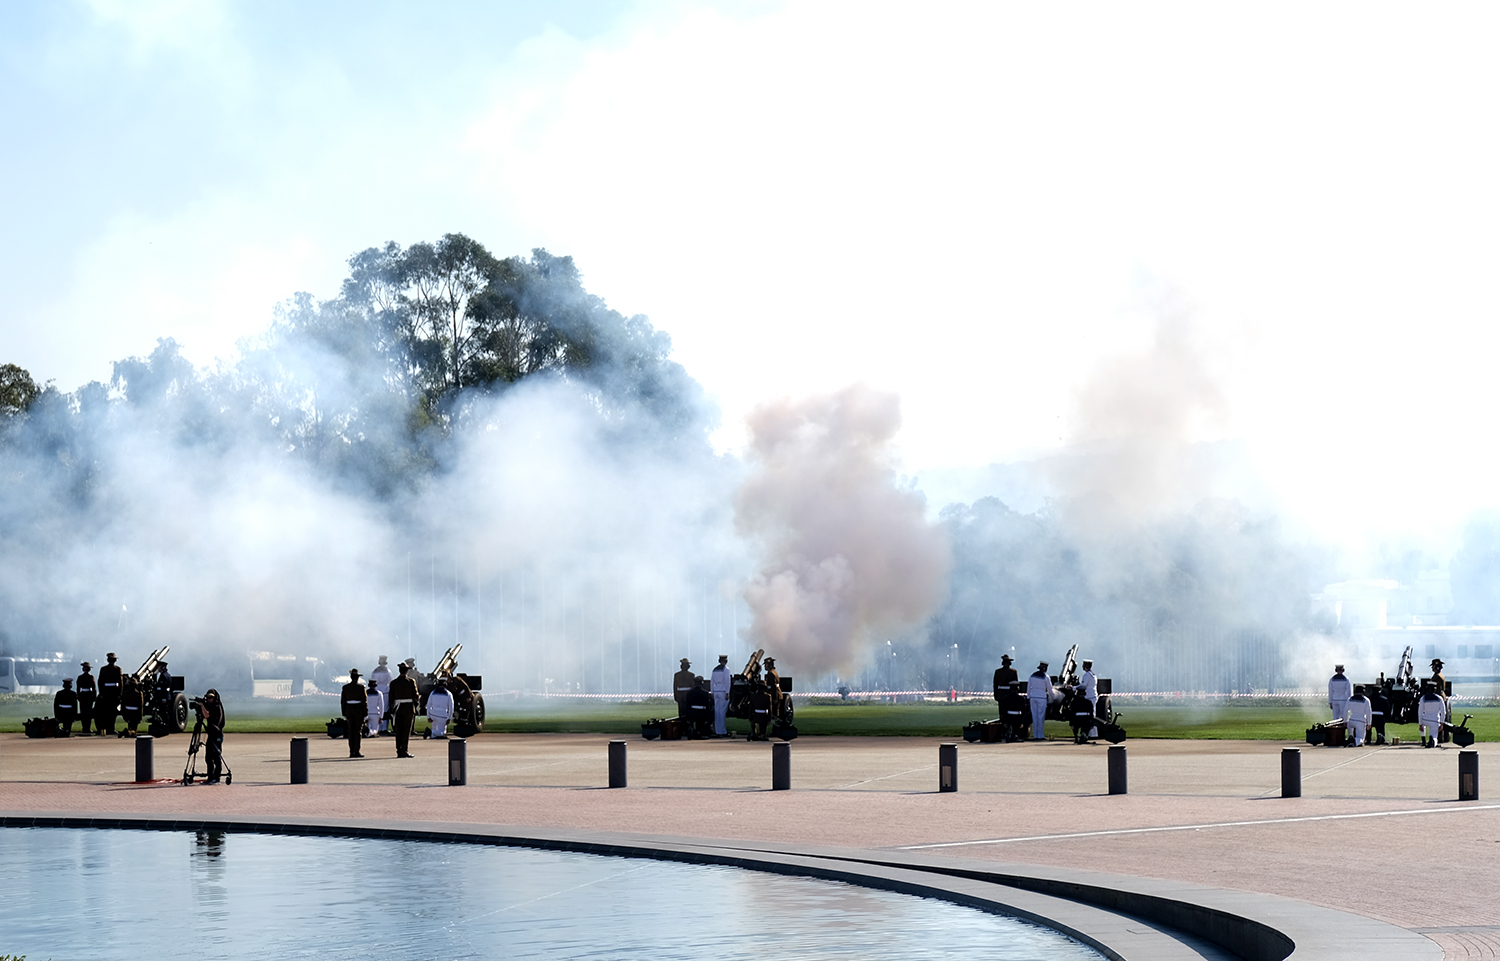 Lễ đón trọng thể Thủ tướng Nguyễn Xuân Phúc tại Australia